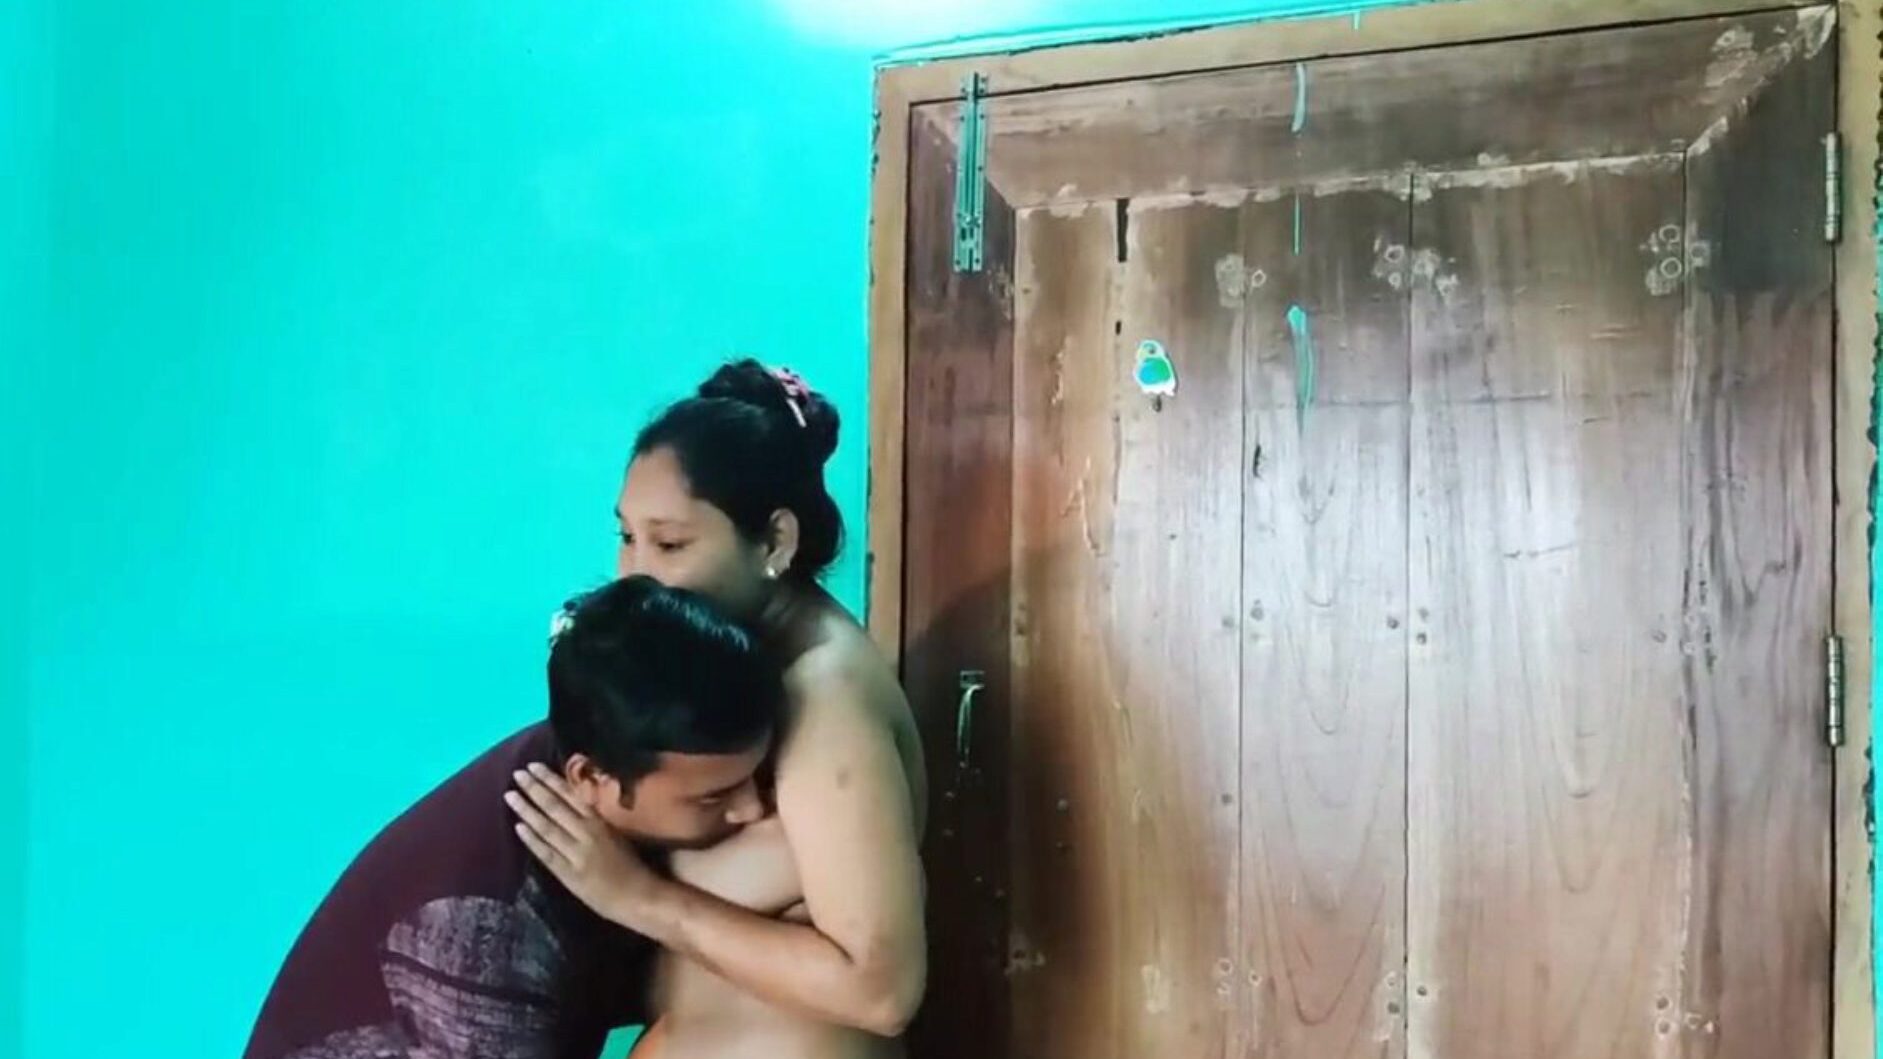 desi bengali sex video naked, free asian porn 6c: xhamster mira desi bengali sex video naked episode en xhamster, el recurso web de tubo de sexo hd más gordo con toneladas de videos de pornografía anal y sexo asiático xxn gratis para todos